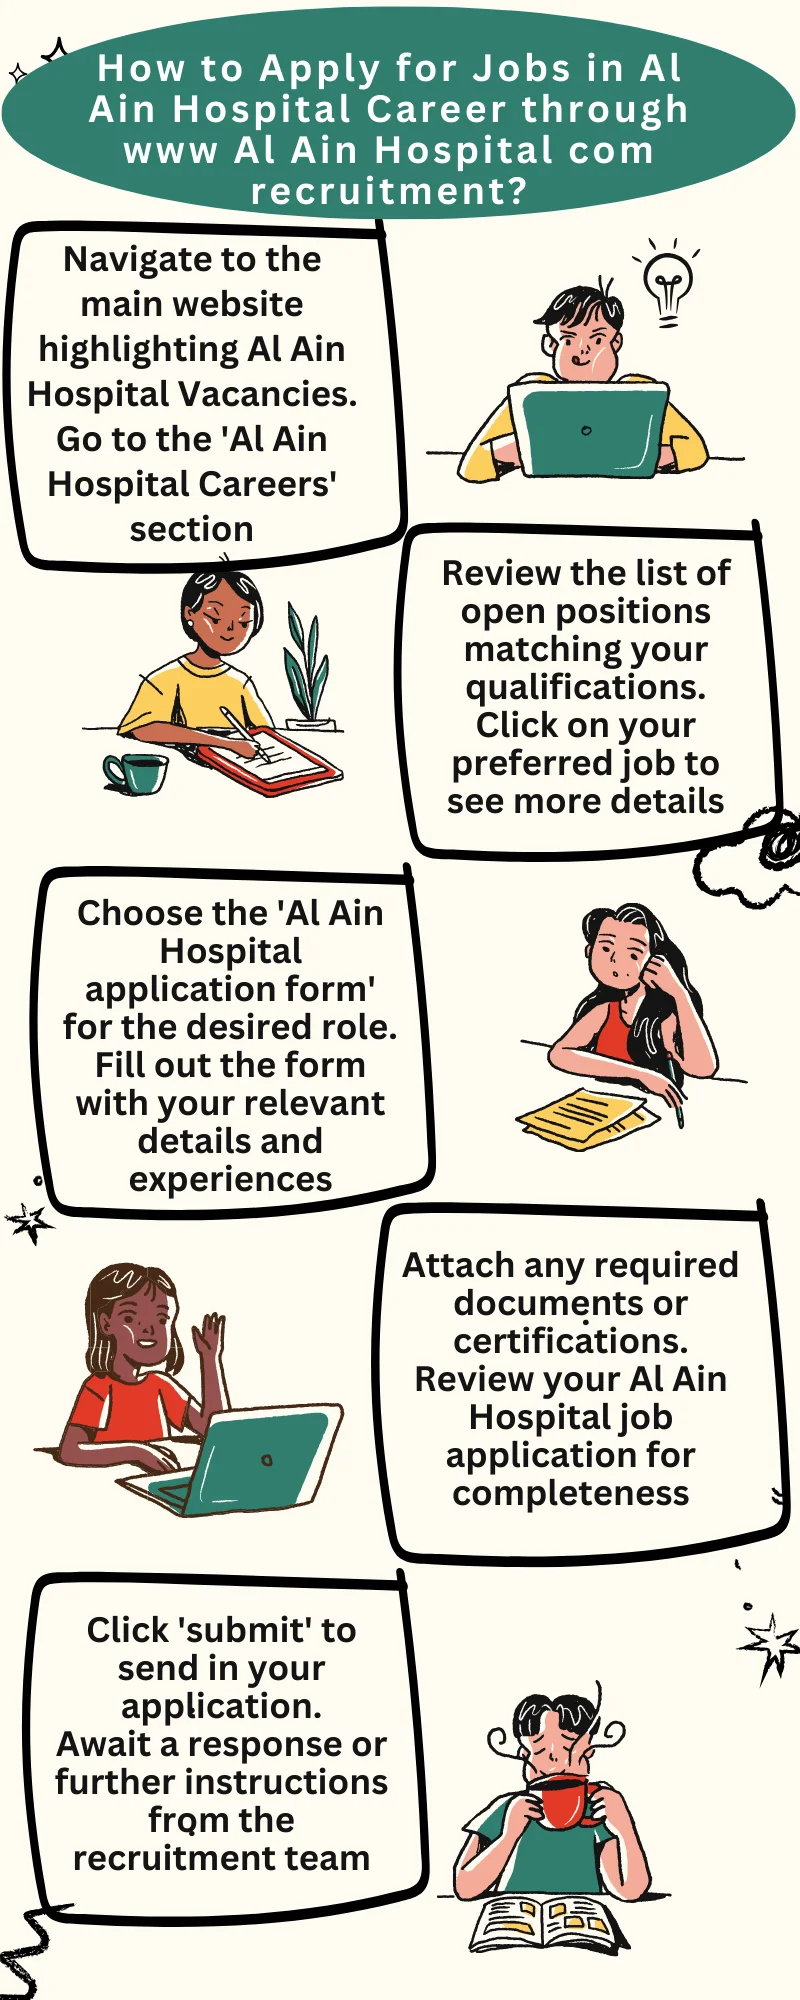 How to Apply for Jobs in Al Ain Hospital Career through www Al Ain Hospital com recruitment?